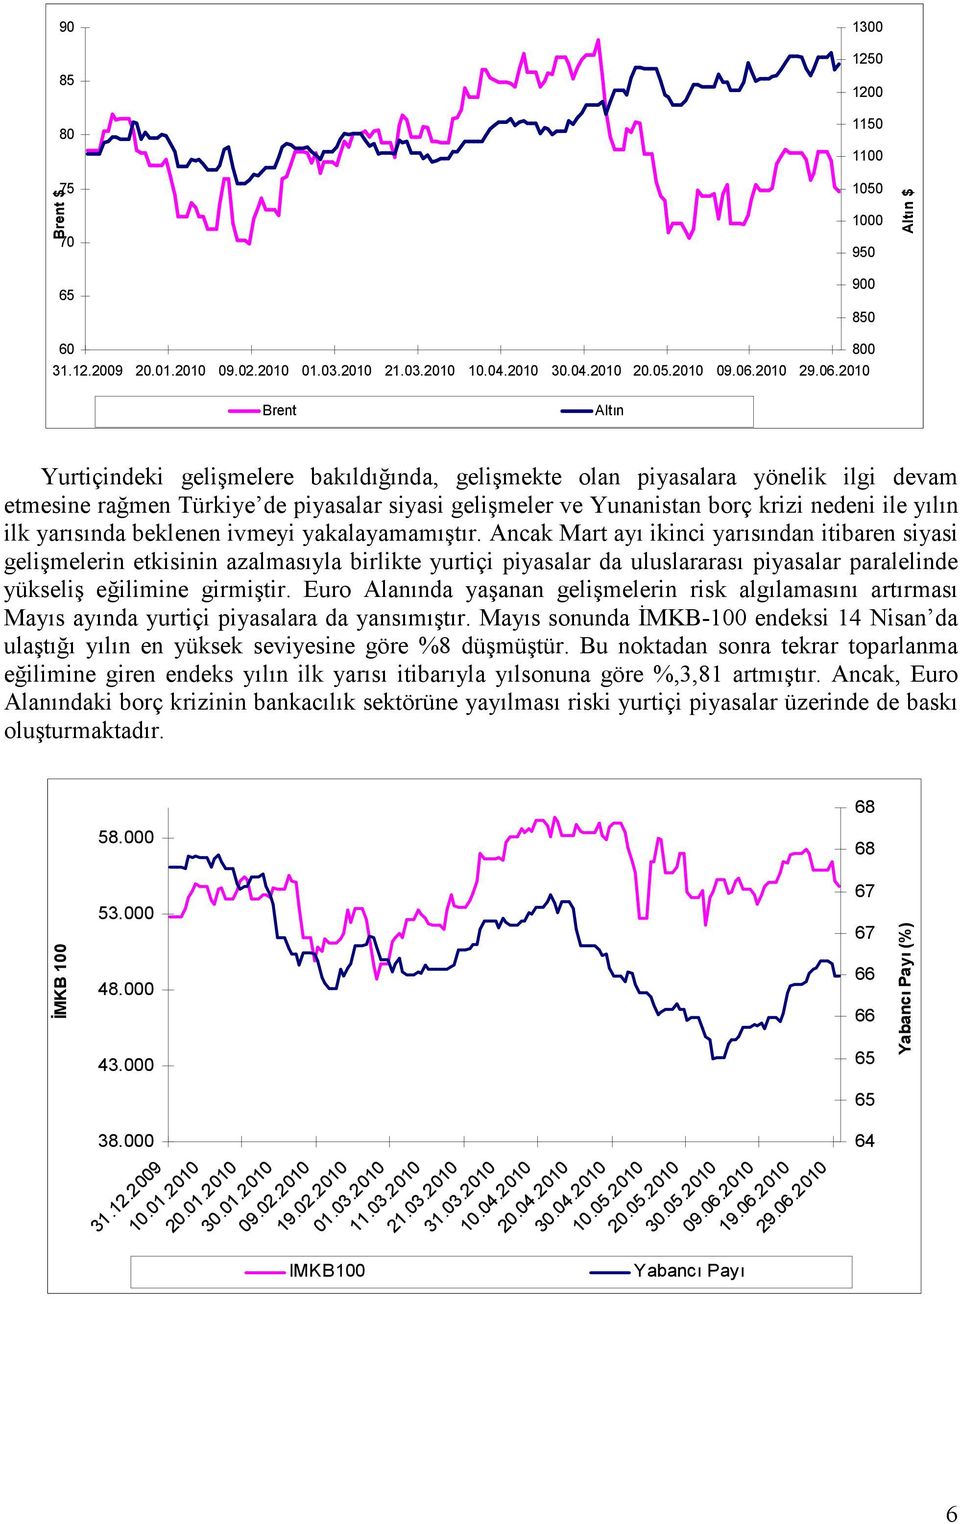 2010 Brent Altın Yurtiçindeki gelişmelere bakıldığında, gelişmekte olan piyasalara yönelik ilgi devam etmesine rağmen Türkiye de piyasalar siyasi gelişmeler ve Yunanistan borç krizi nedeni ile yılın